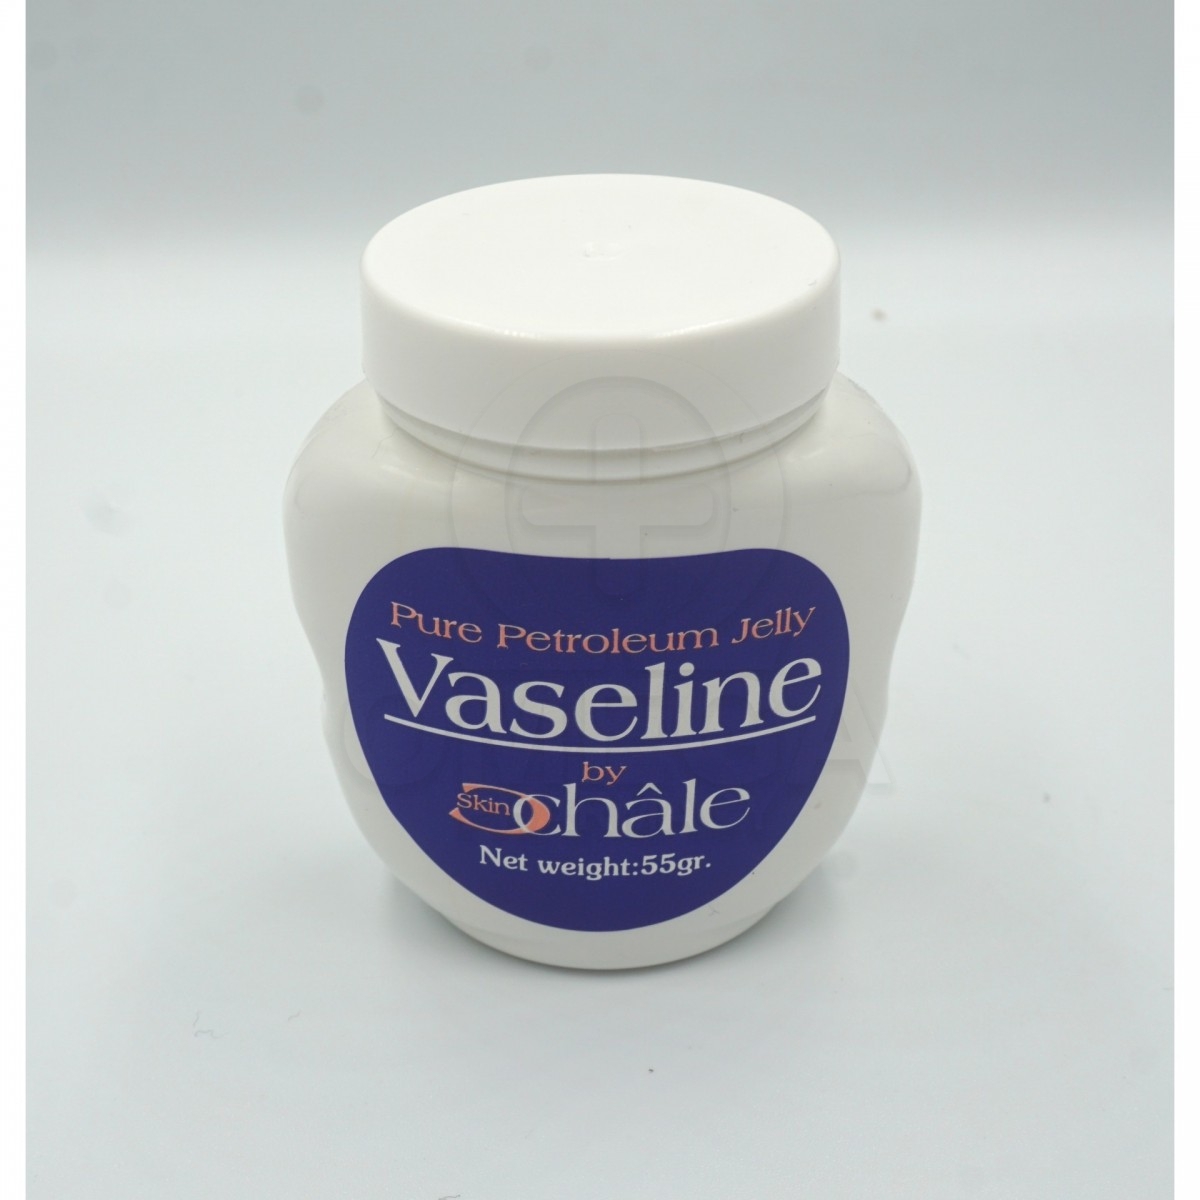 Αλλαγή πάνας - Ενυδατωση σωματος - Ενυδατωση προσωπου - Αλλαγη πανας -  CHALE Vaseline Pure Petroleum Jelly Βαζελίνη 55gr